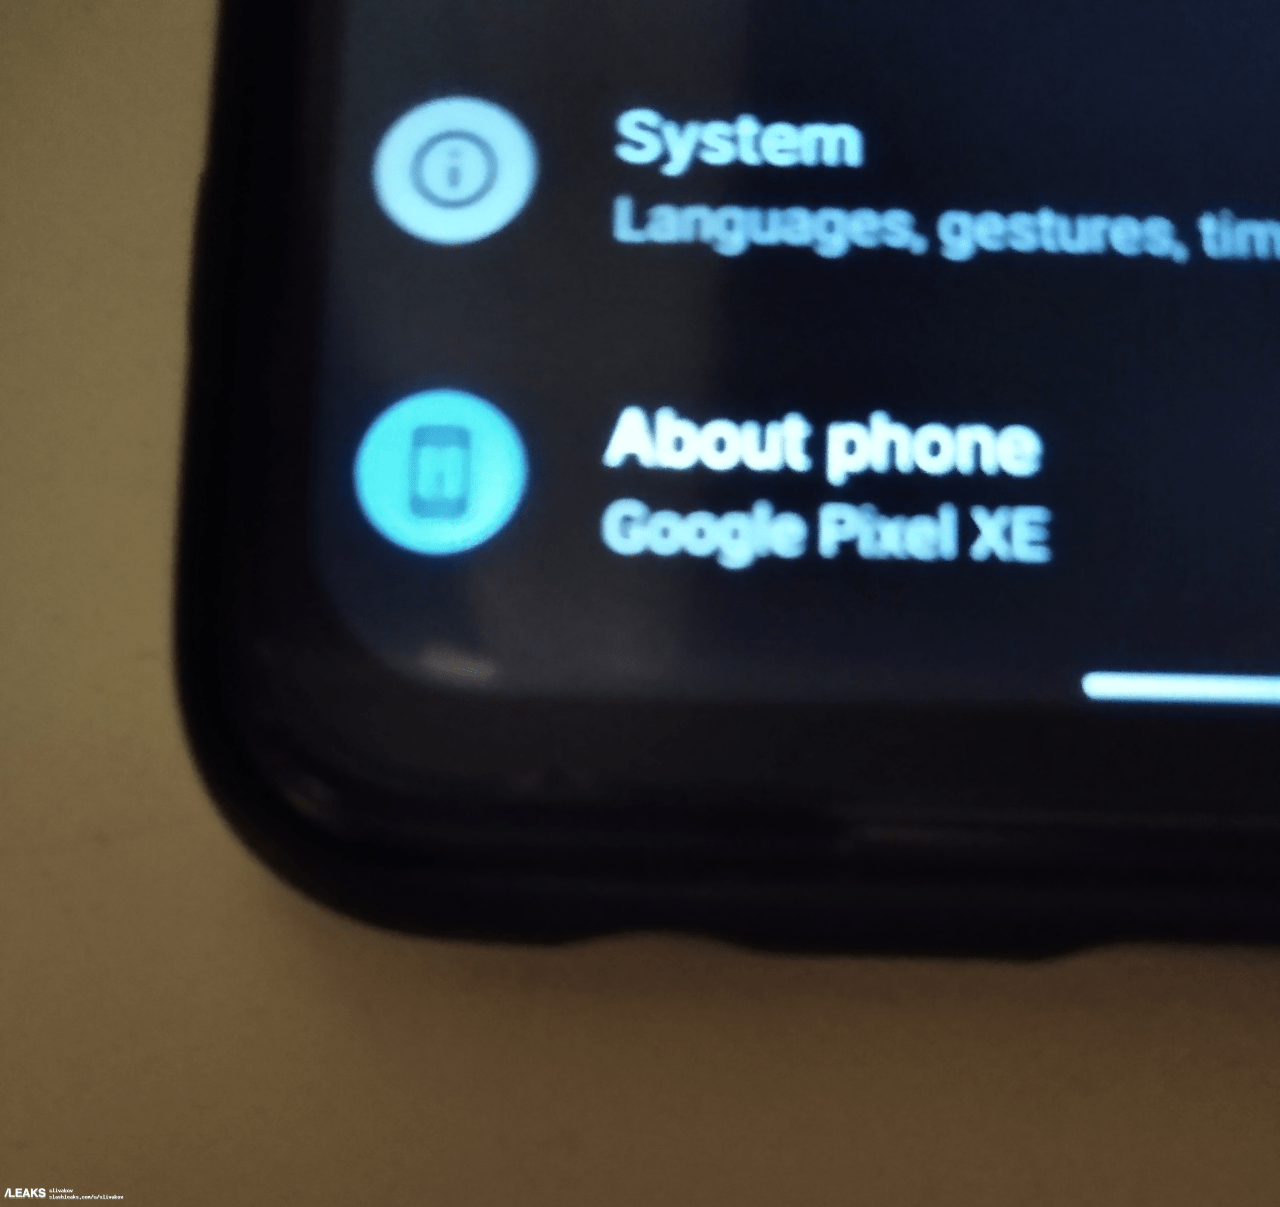 Google sắp ra mắt một smartphone Pixel với tên gọi là Google Pixel XE